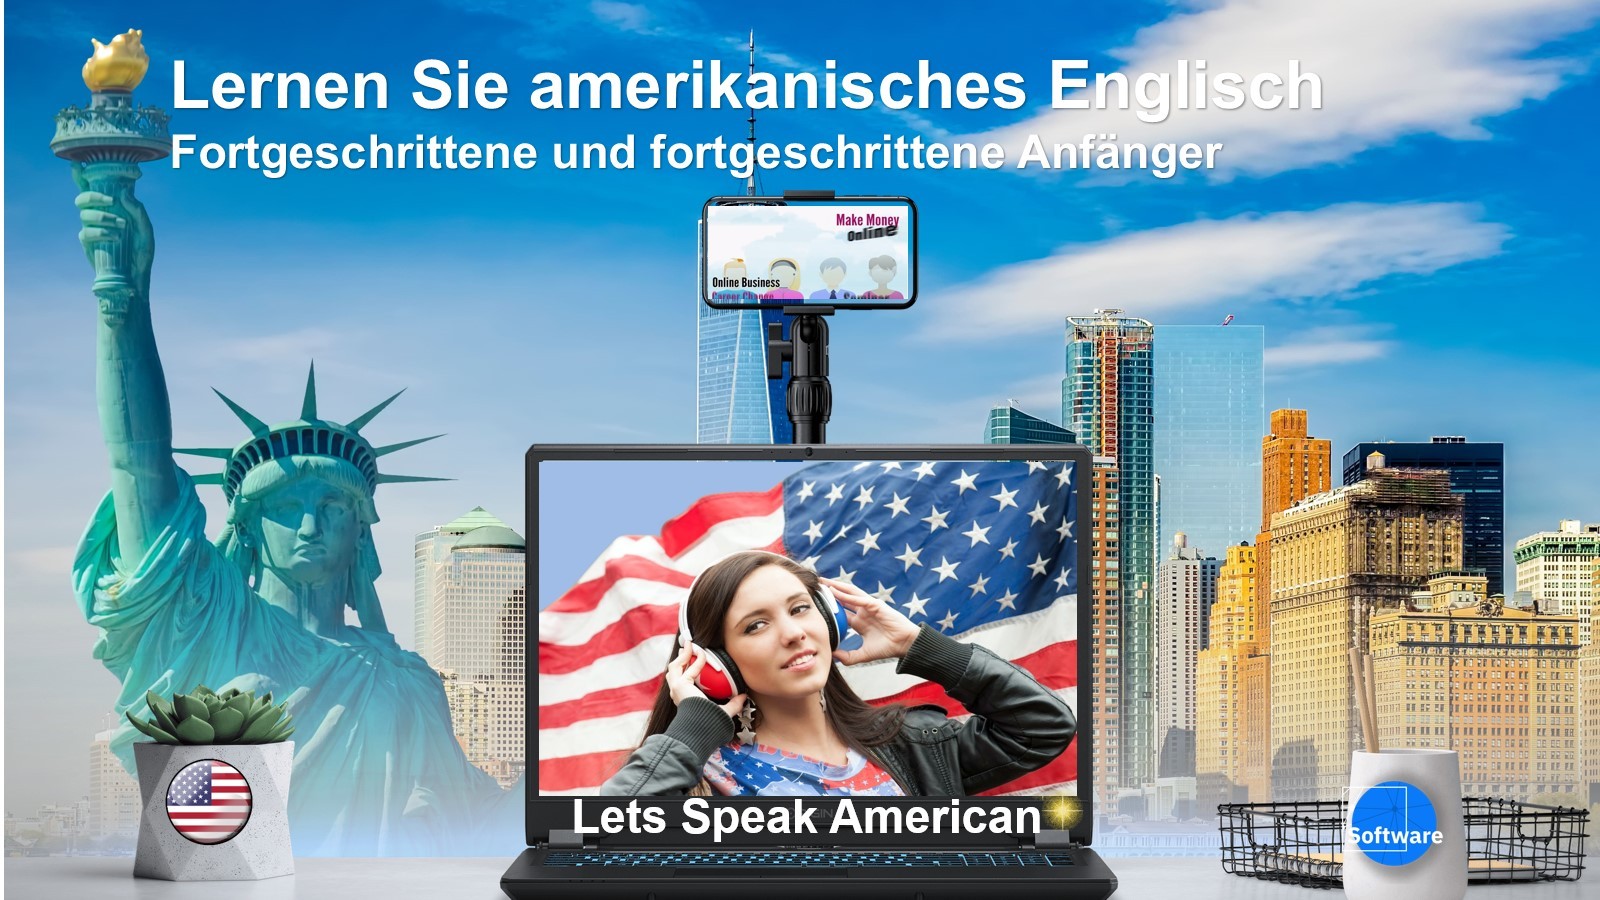 Lernen Sie amerikanisches Englisch fortgeschrittene Anfänger